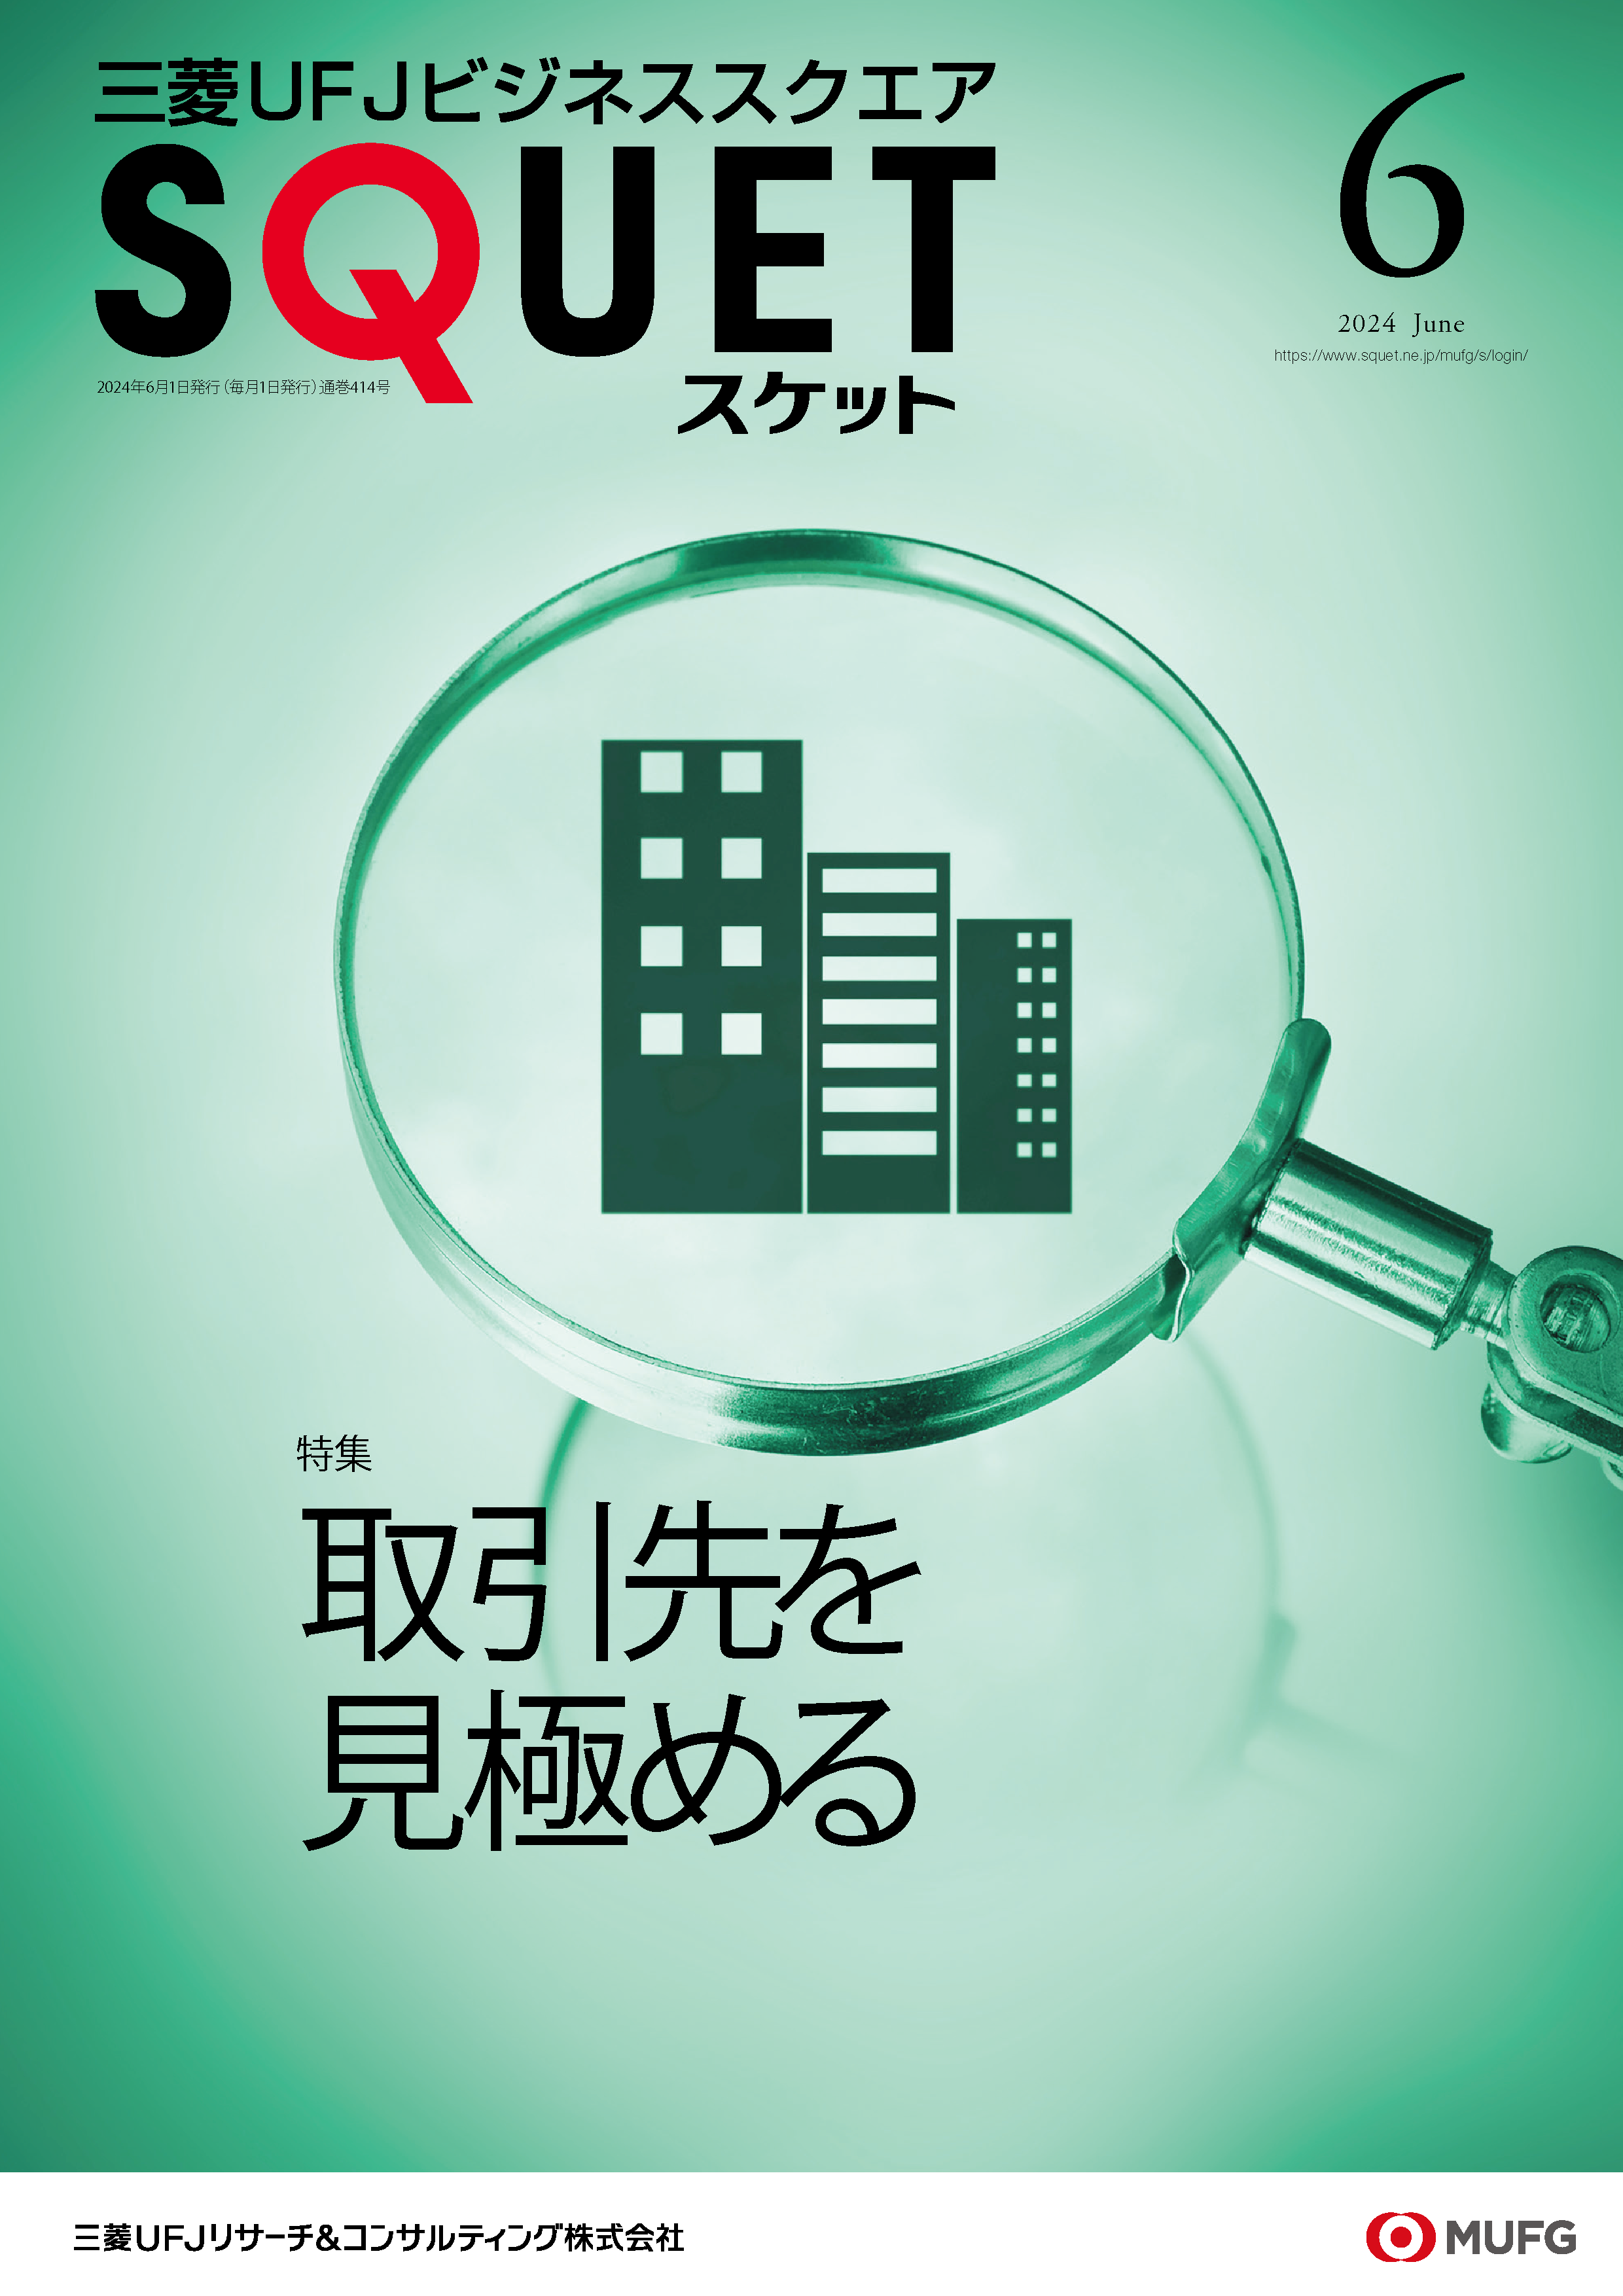  三菱UFJビジネススクエア『SQUET』6月号に掲載されました